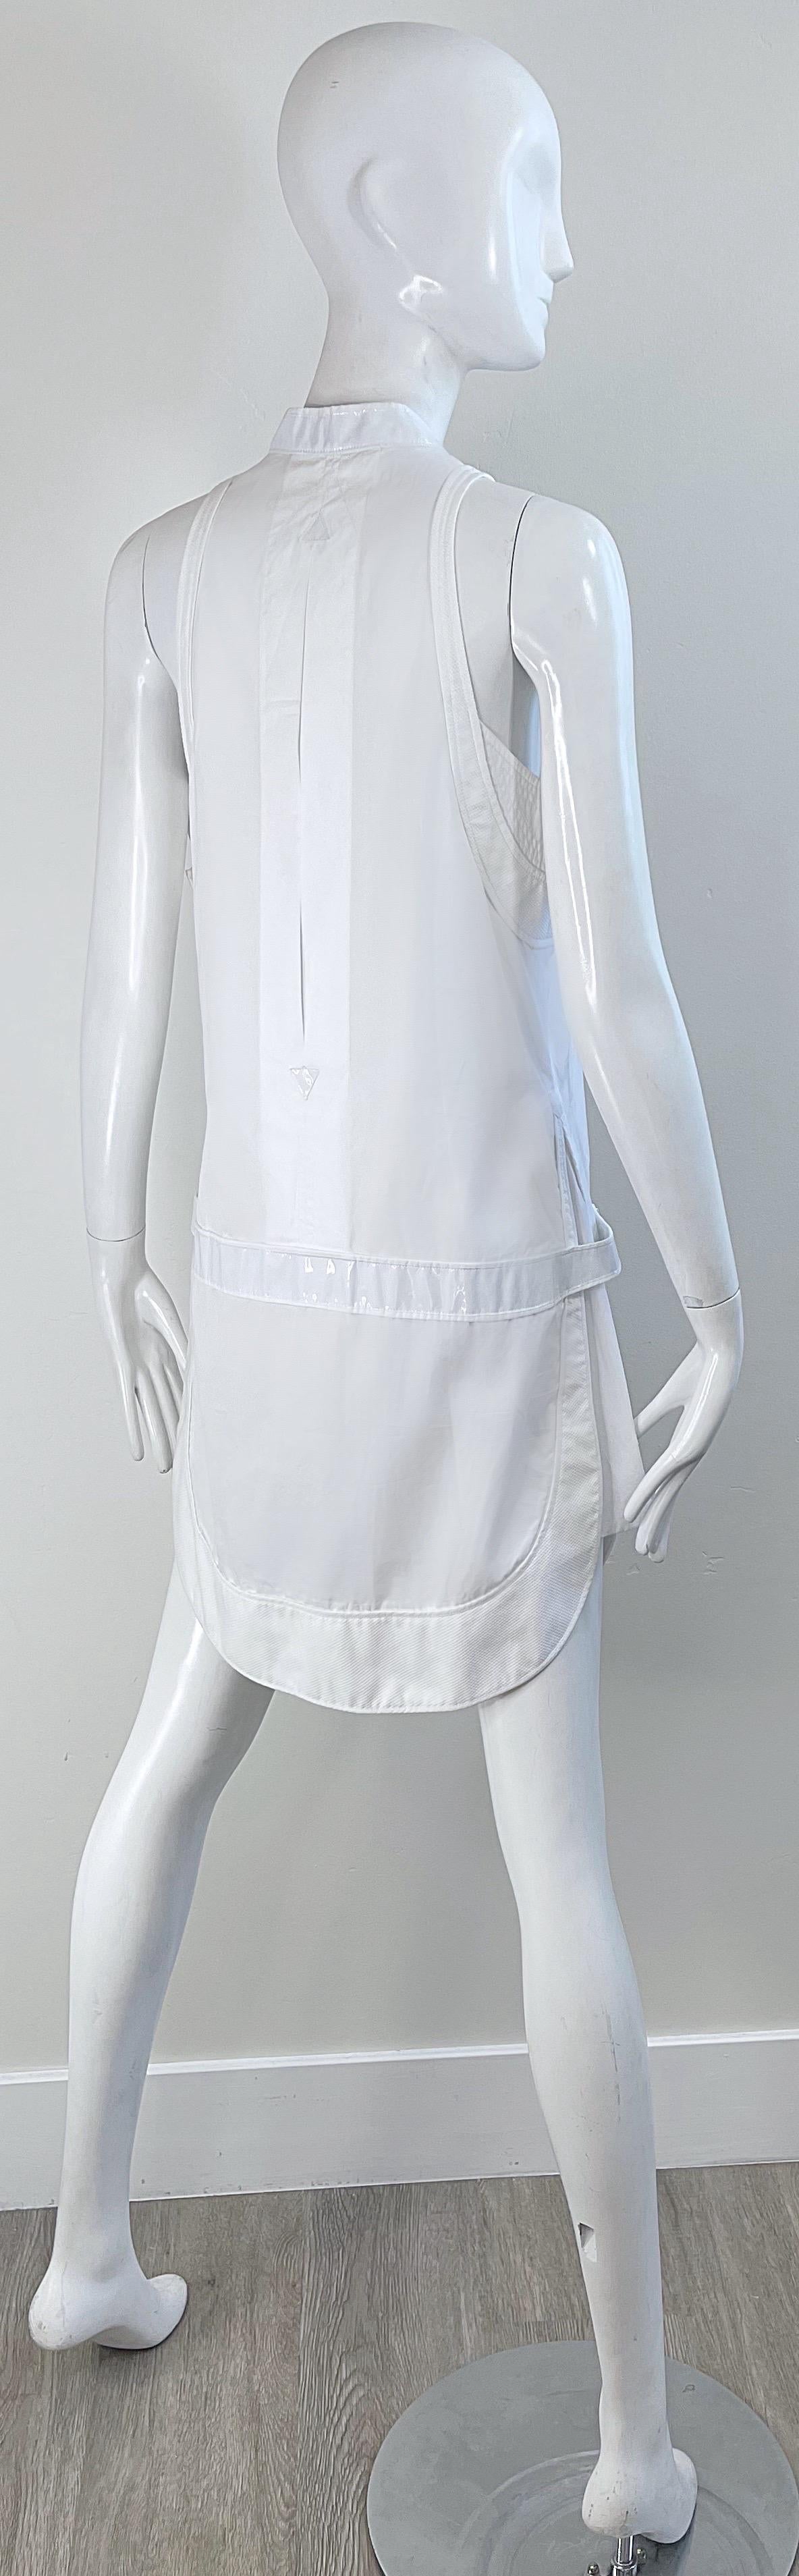 Balenciaga Spring 2007 by Nicolas Ghesquiere Size 38 / 8 White Tuxedo Dress  For Sale 15